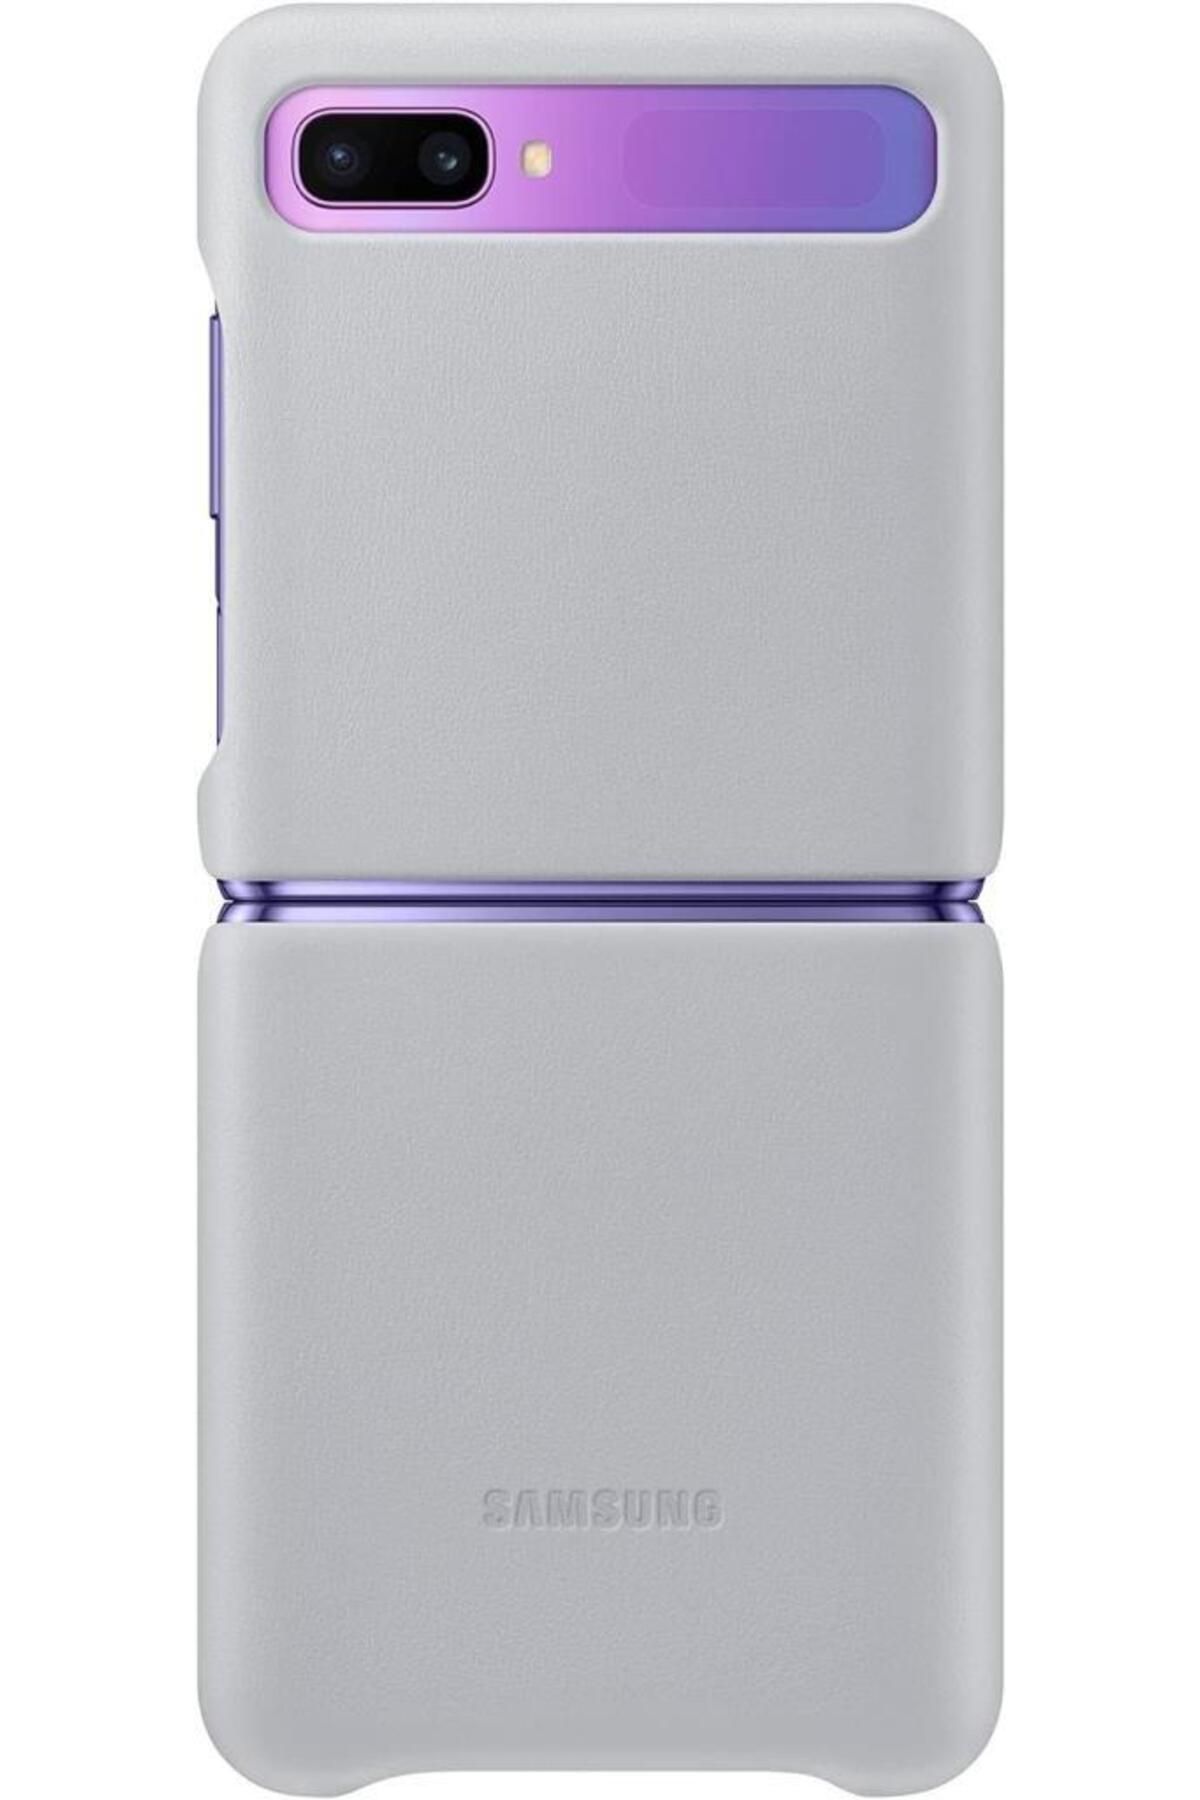 Samsung Galaxy Z Flip Deri Kılıf Gümüş Gri Ef-vf700lsegww